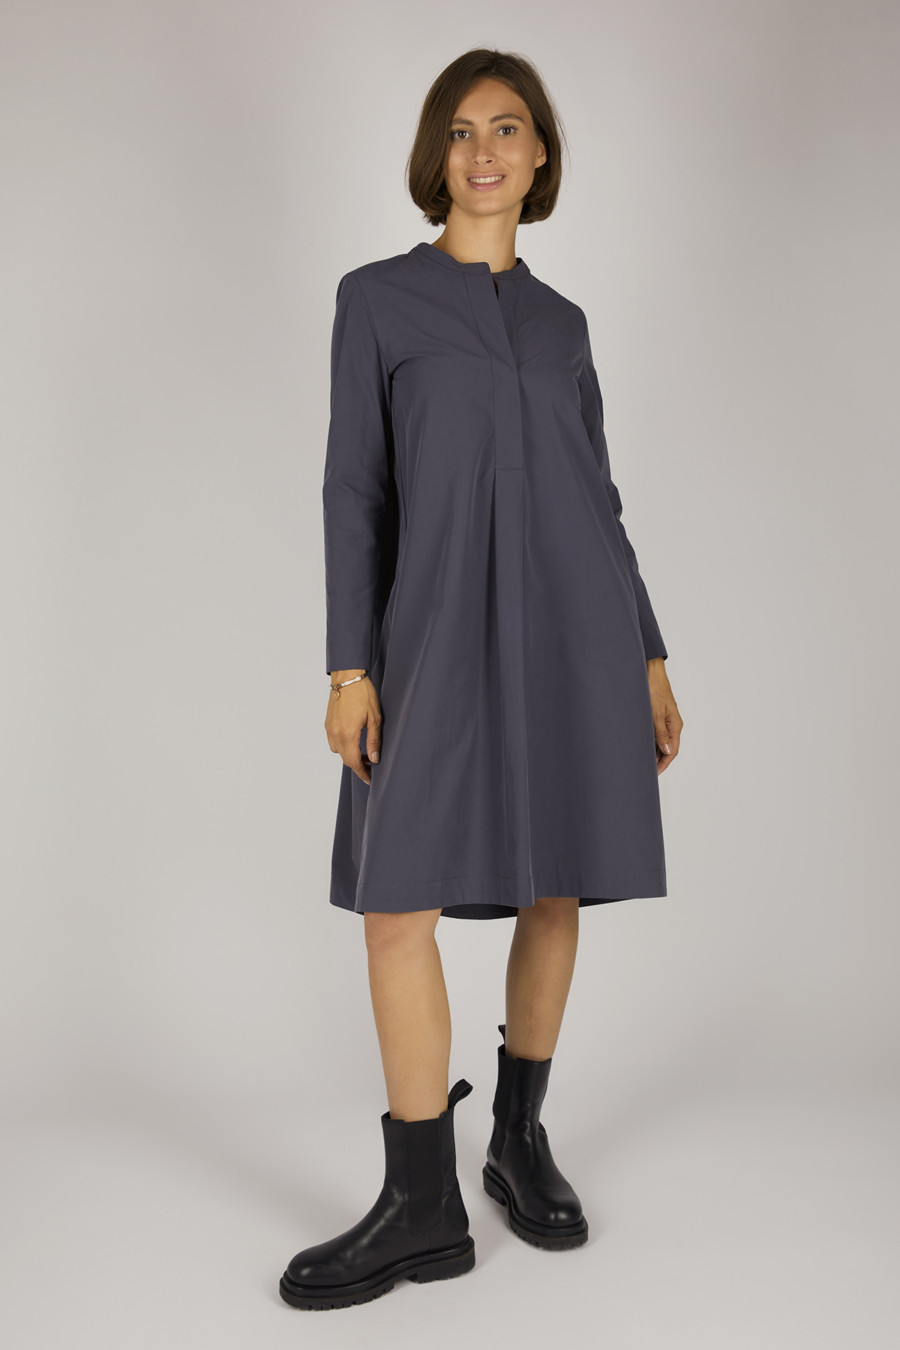 GLADIS – Legeres Hemdblusenkleid mit Rundhalsausschnitt – Farbe: Schiefer